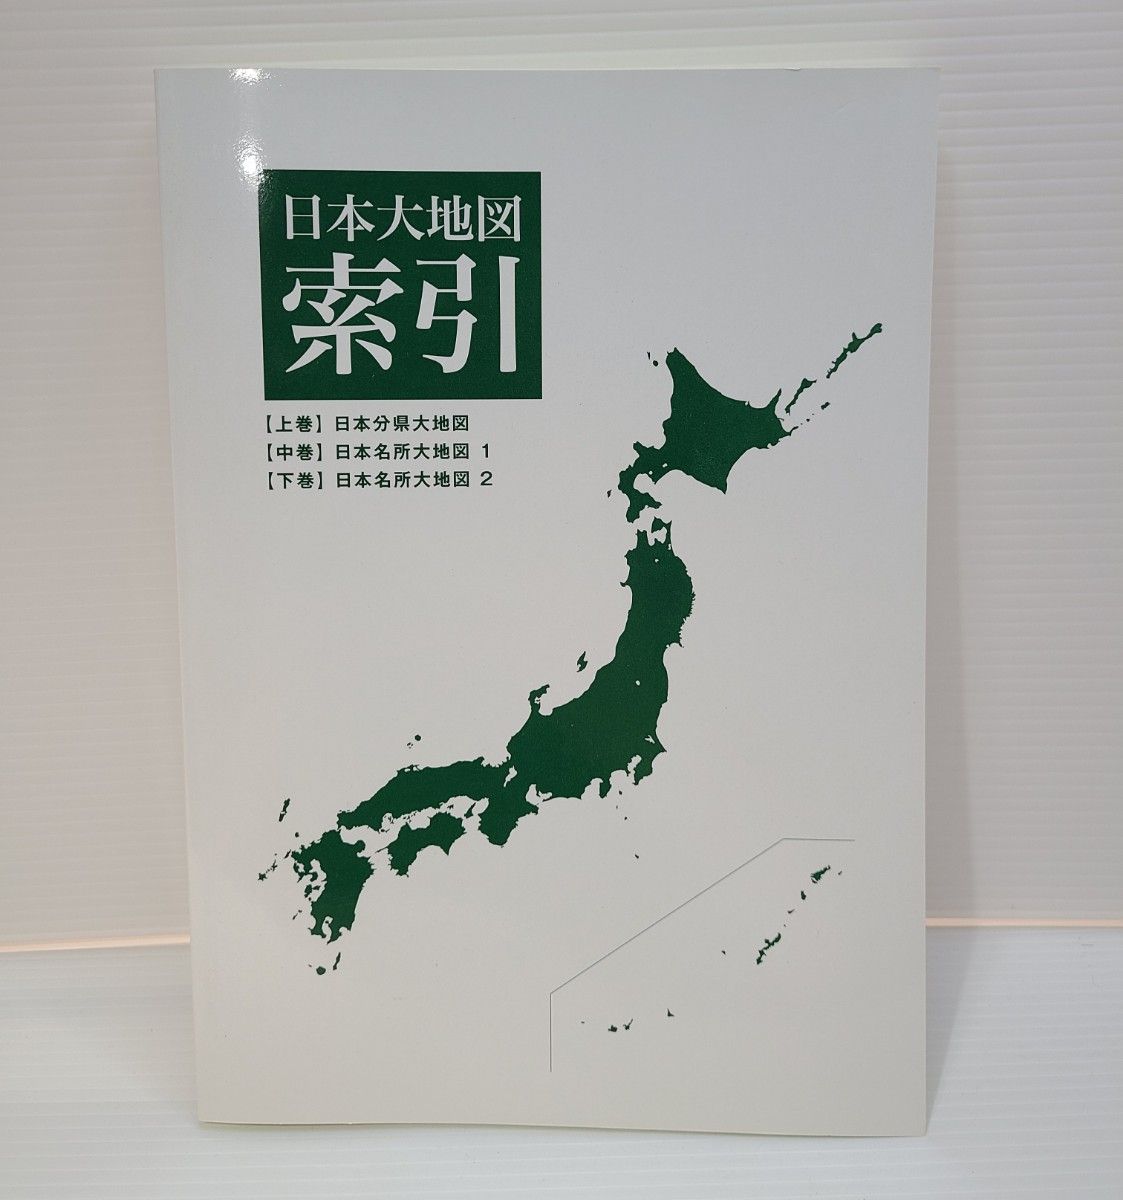 ユーキャン 日本大地図 2020 日本地図 日本海洋図 富士遠望パノラマ図 